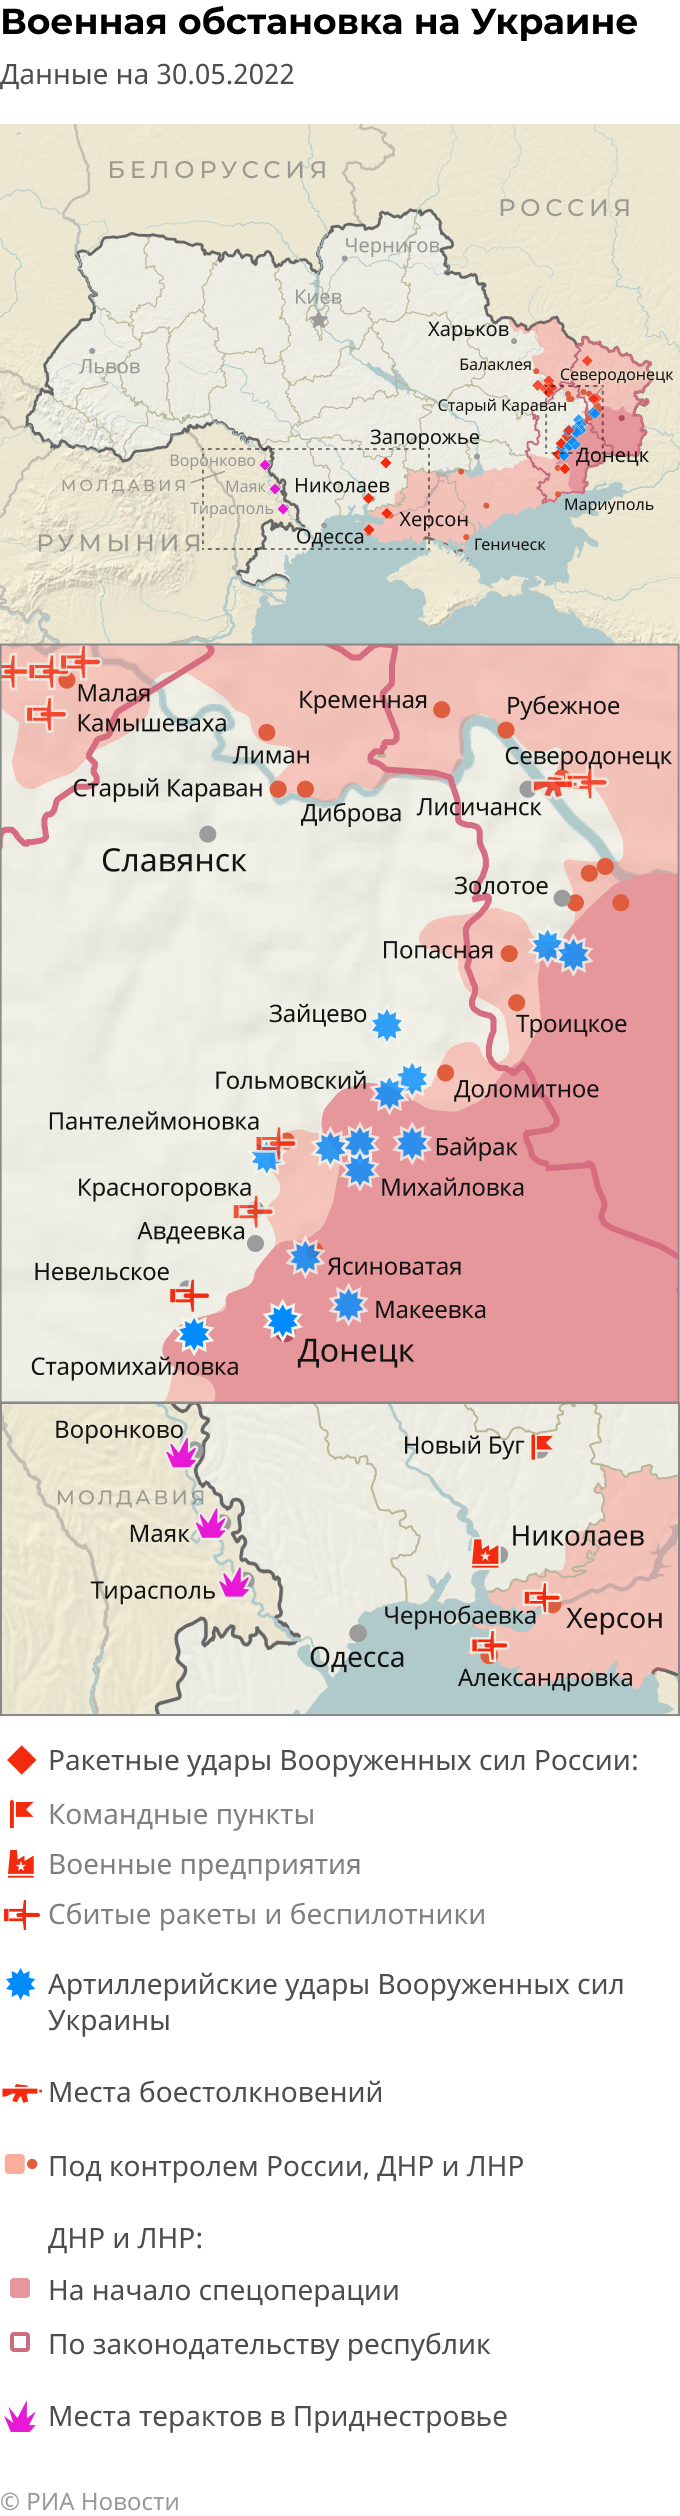 Рубежное карта боевых действий на украине